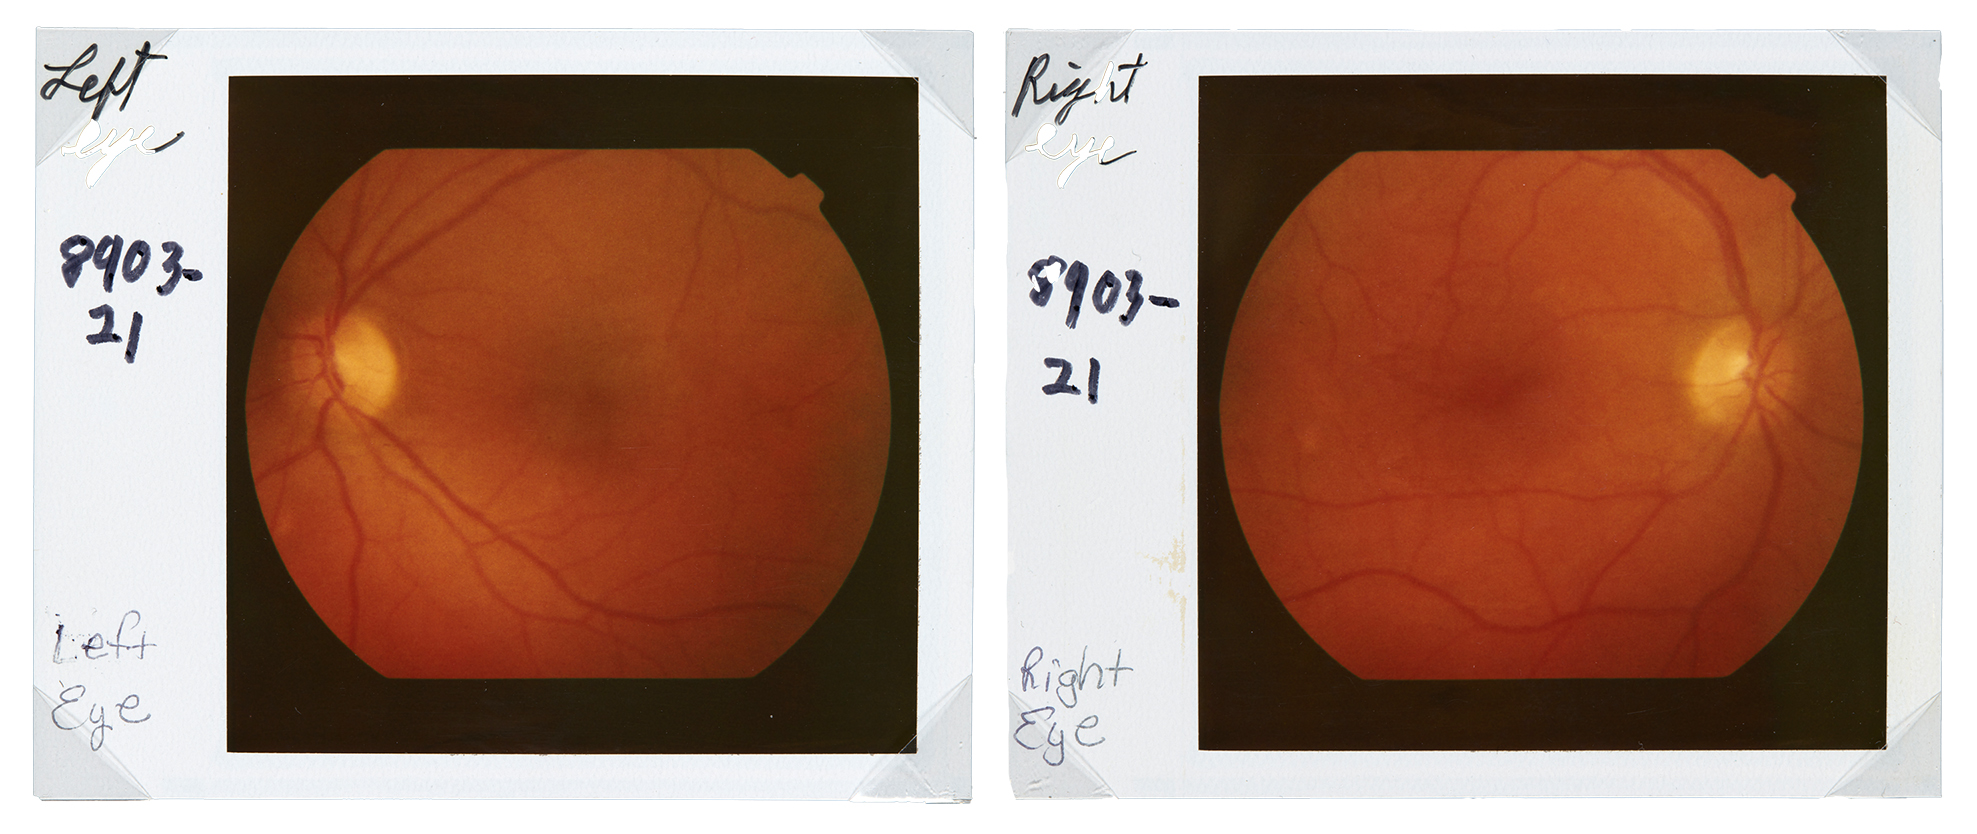 Kaksi polaroidkuvaa, jotka ovat värillisiä röntgenkuvia oikeasta ja vasemmasta silmästä.